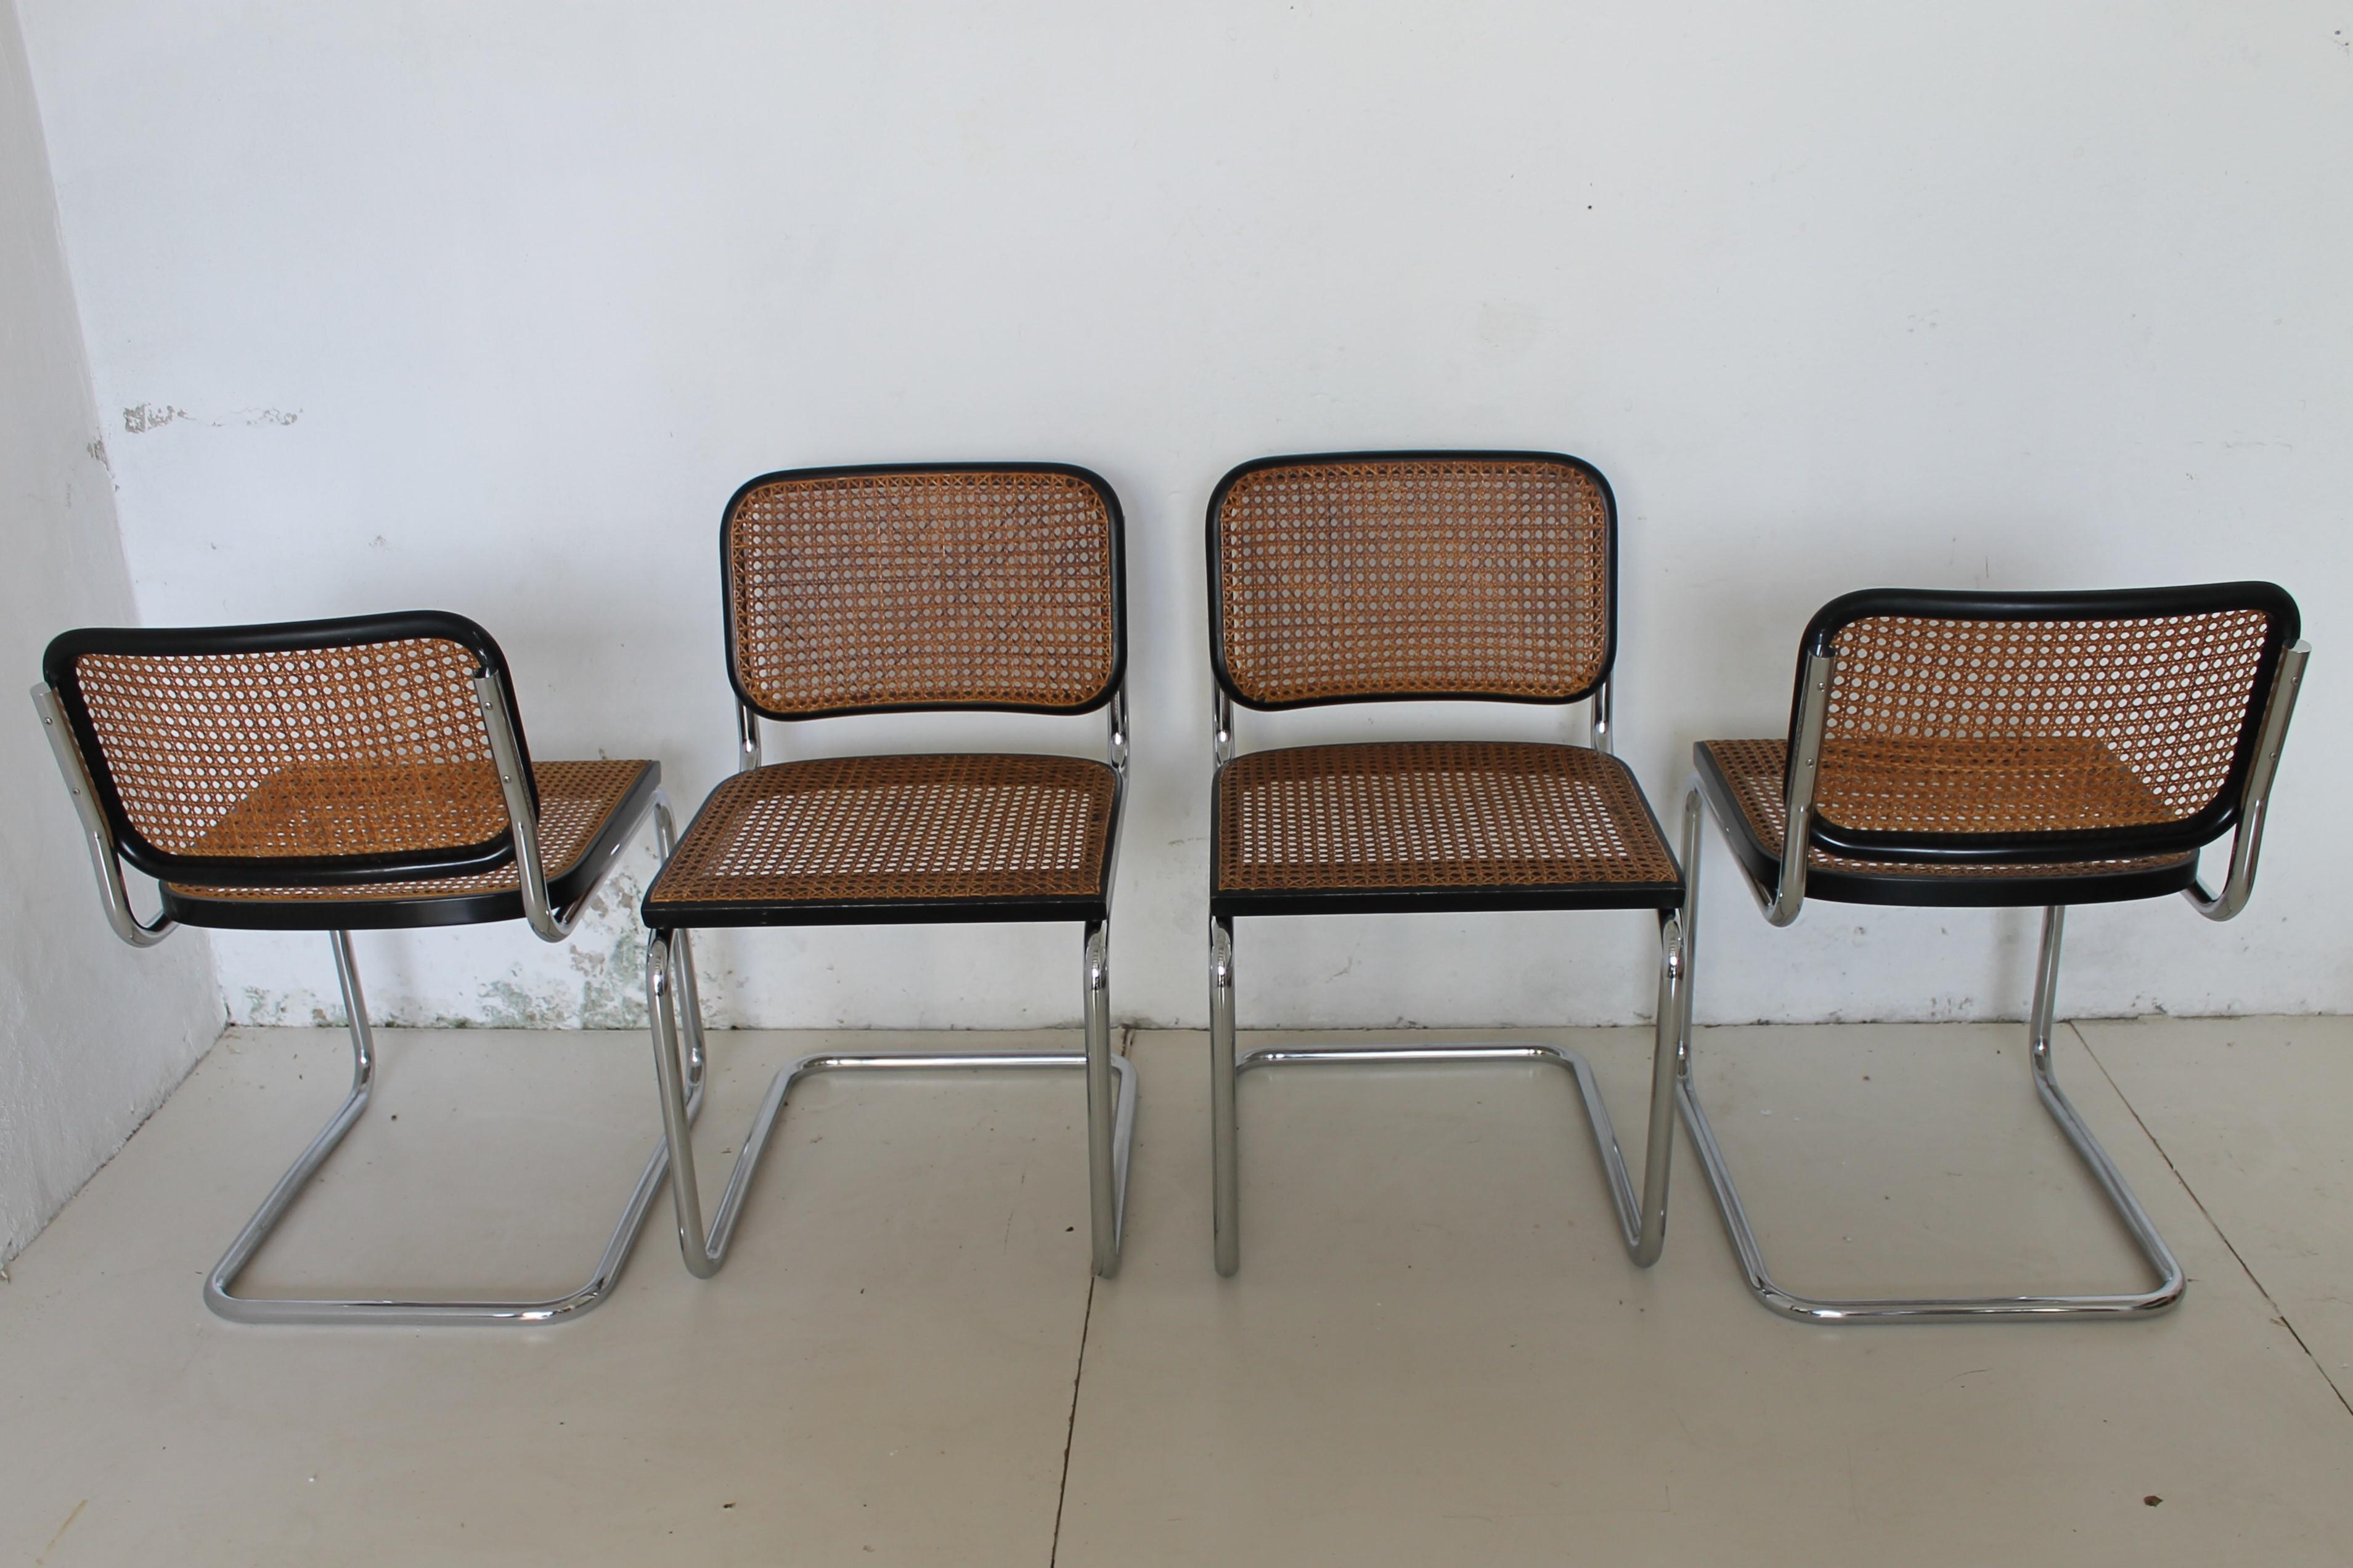 Quatre chaises Cesca conçues par Marcel Breuer pour Gavina datées d'environ 1965 (le projet a été créé en 1928).

Cette première série est cousue à la main, paille par paille, fil par fil.

Une avec un nouveau siège 